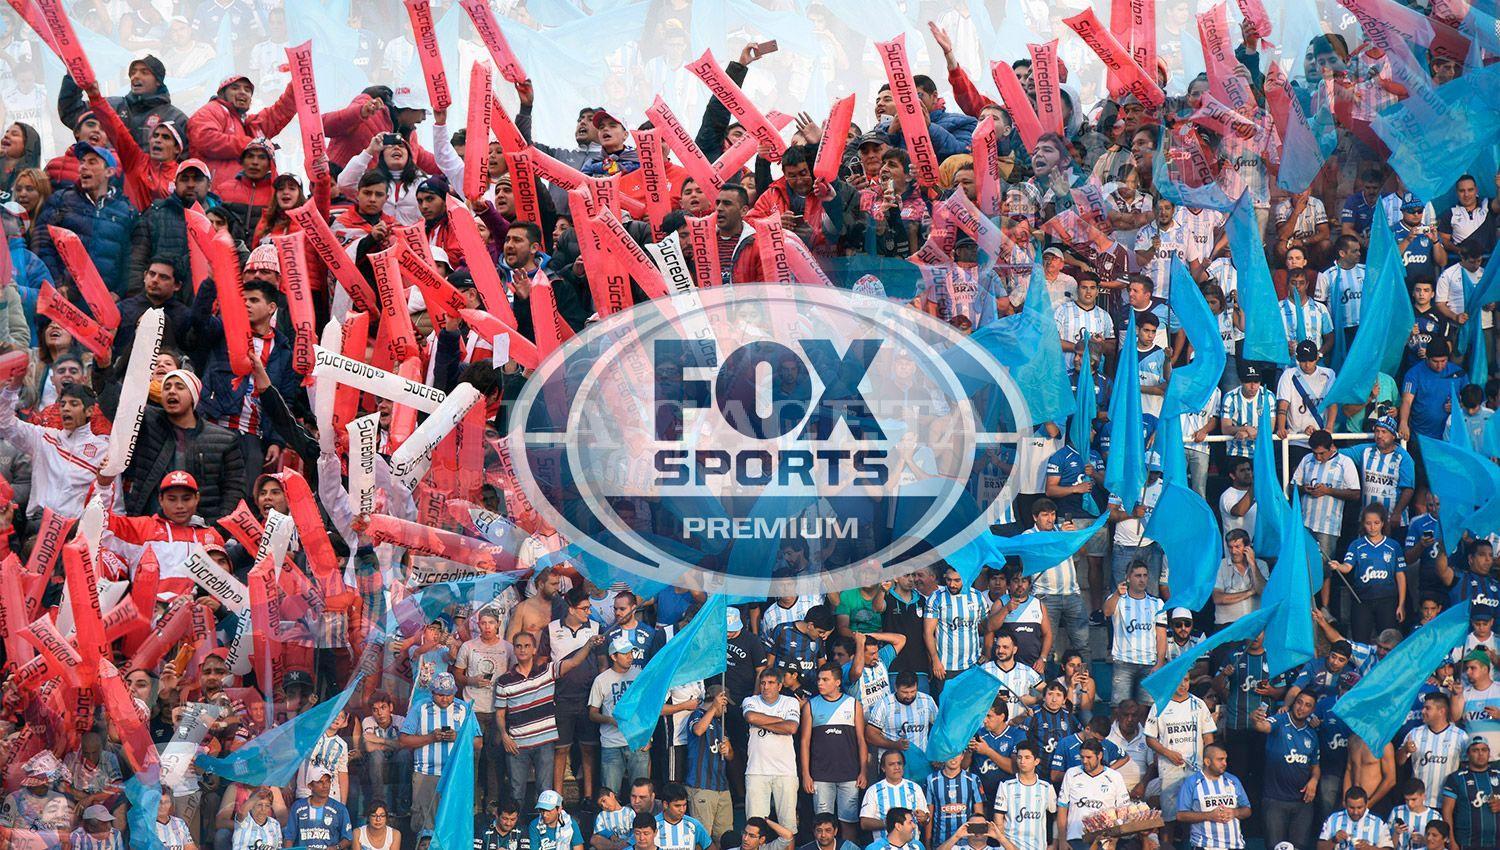 Un solo canal: los clásicos entre San Martín y Atlético se emitirán únicamente por Fox Sports Premium